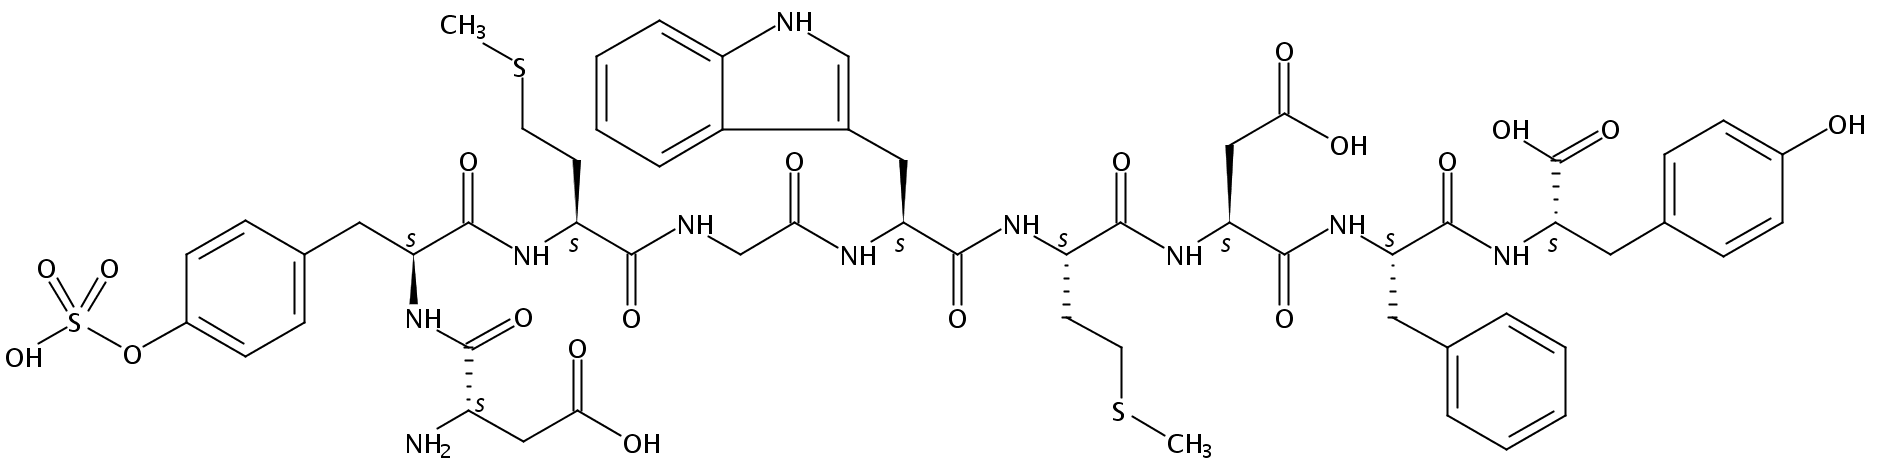 (Tyr⁹)-Cholecystokinin Octapeptide (sulfated)